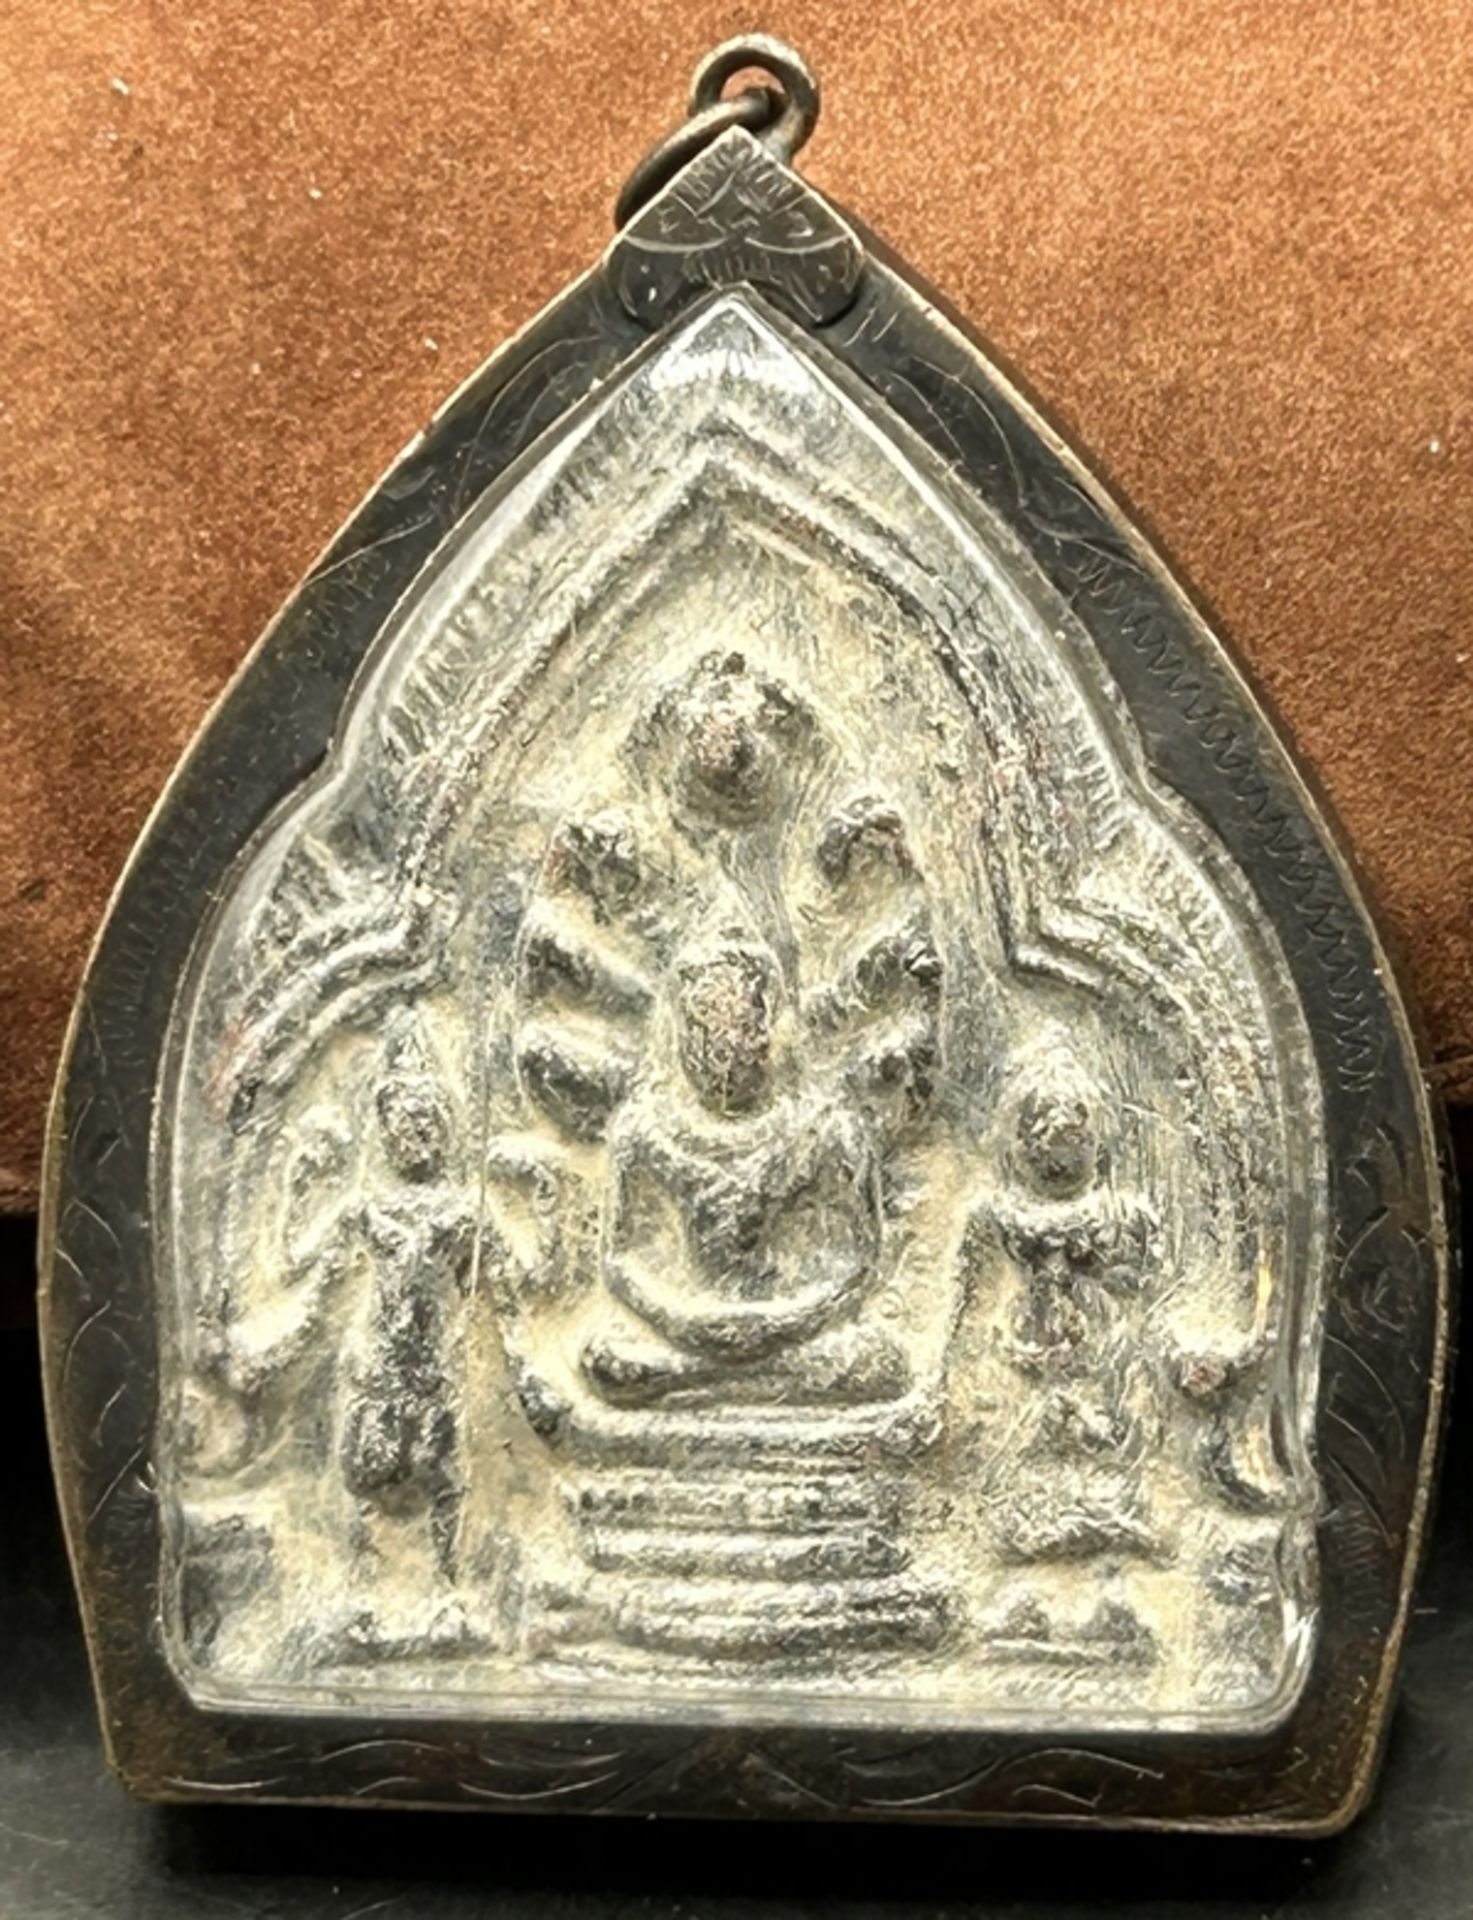 kl. Reisealtar, wohl Tibet, Kupfergehäuse, ca. 7x6 cm